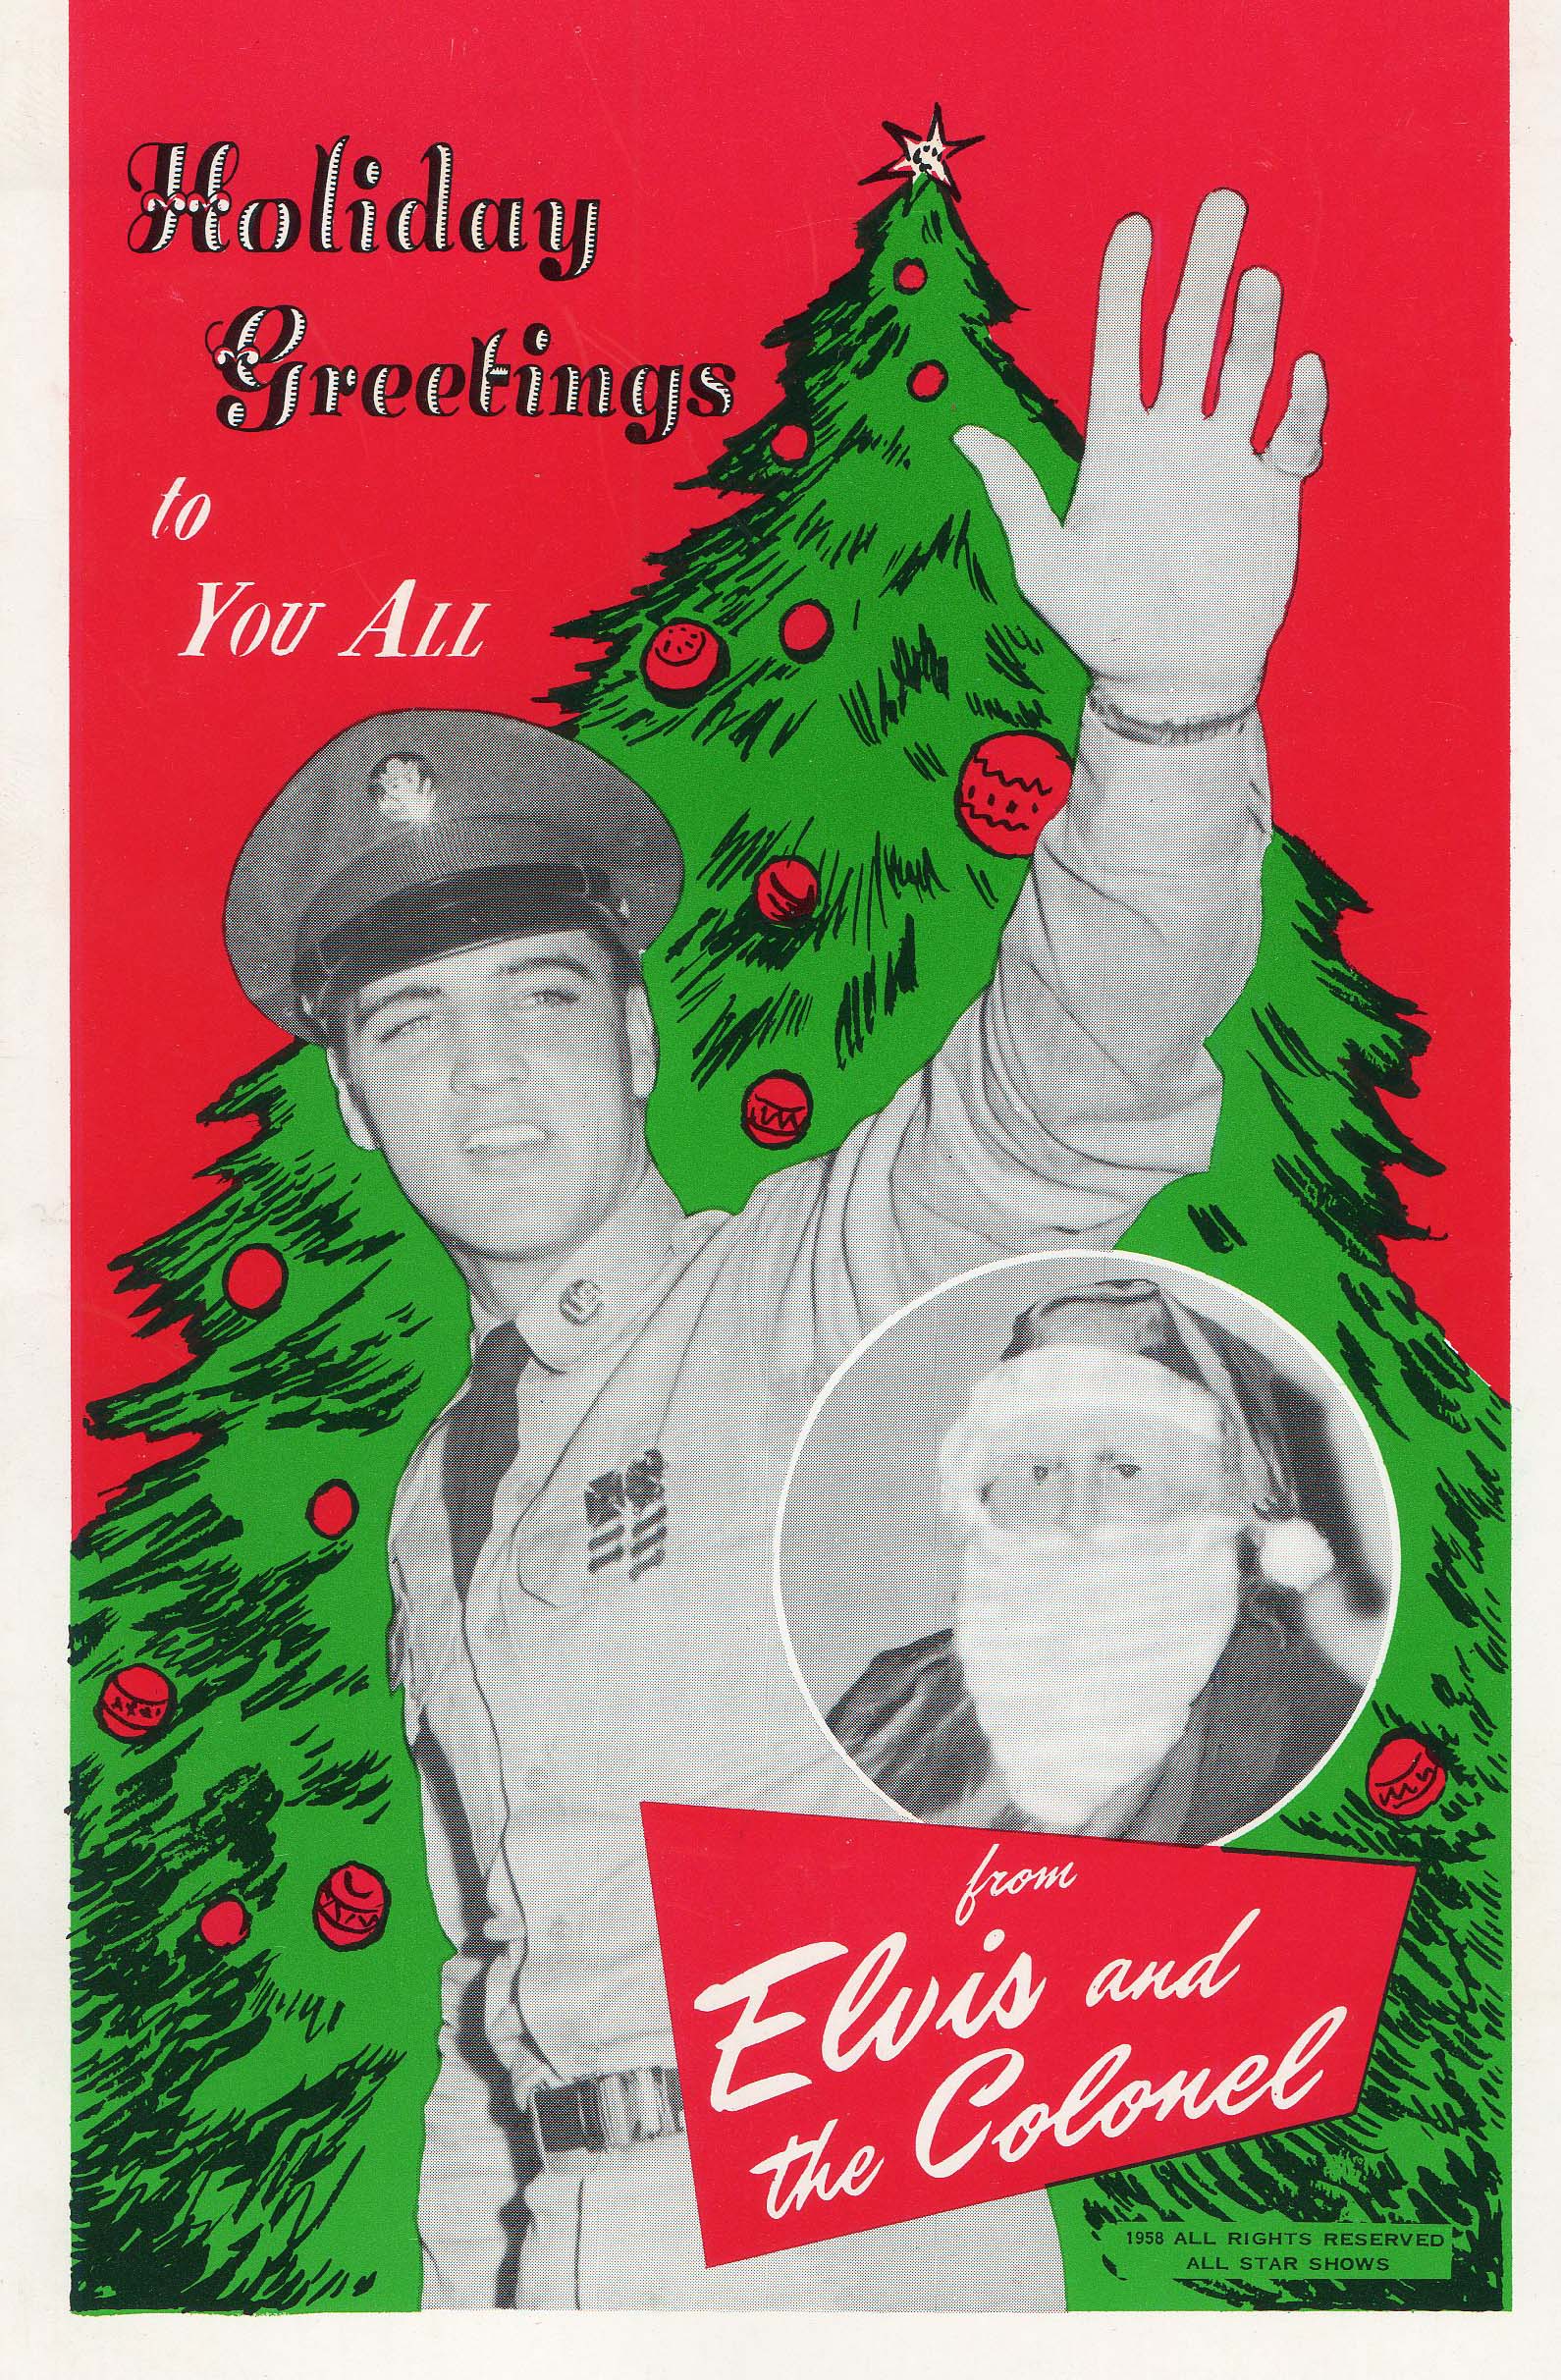 Christmas card 1958